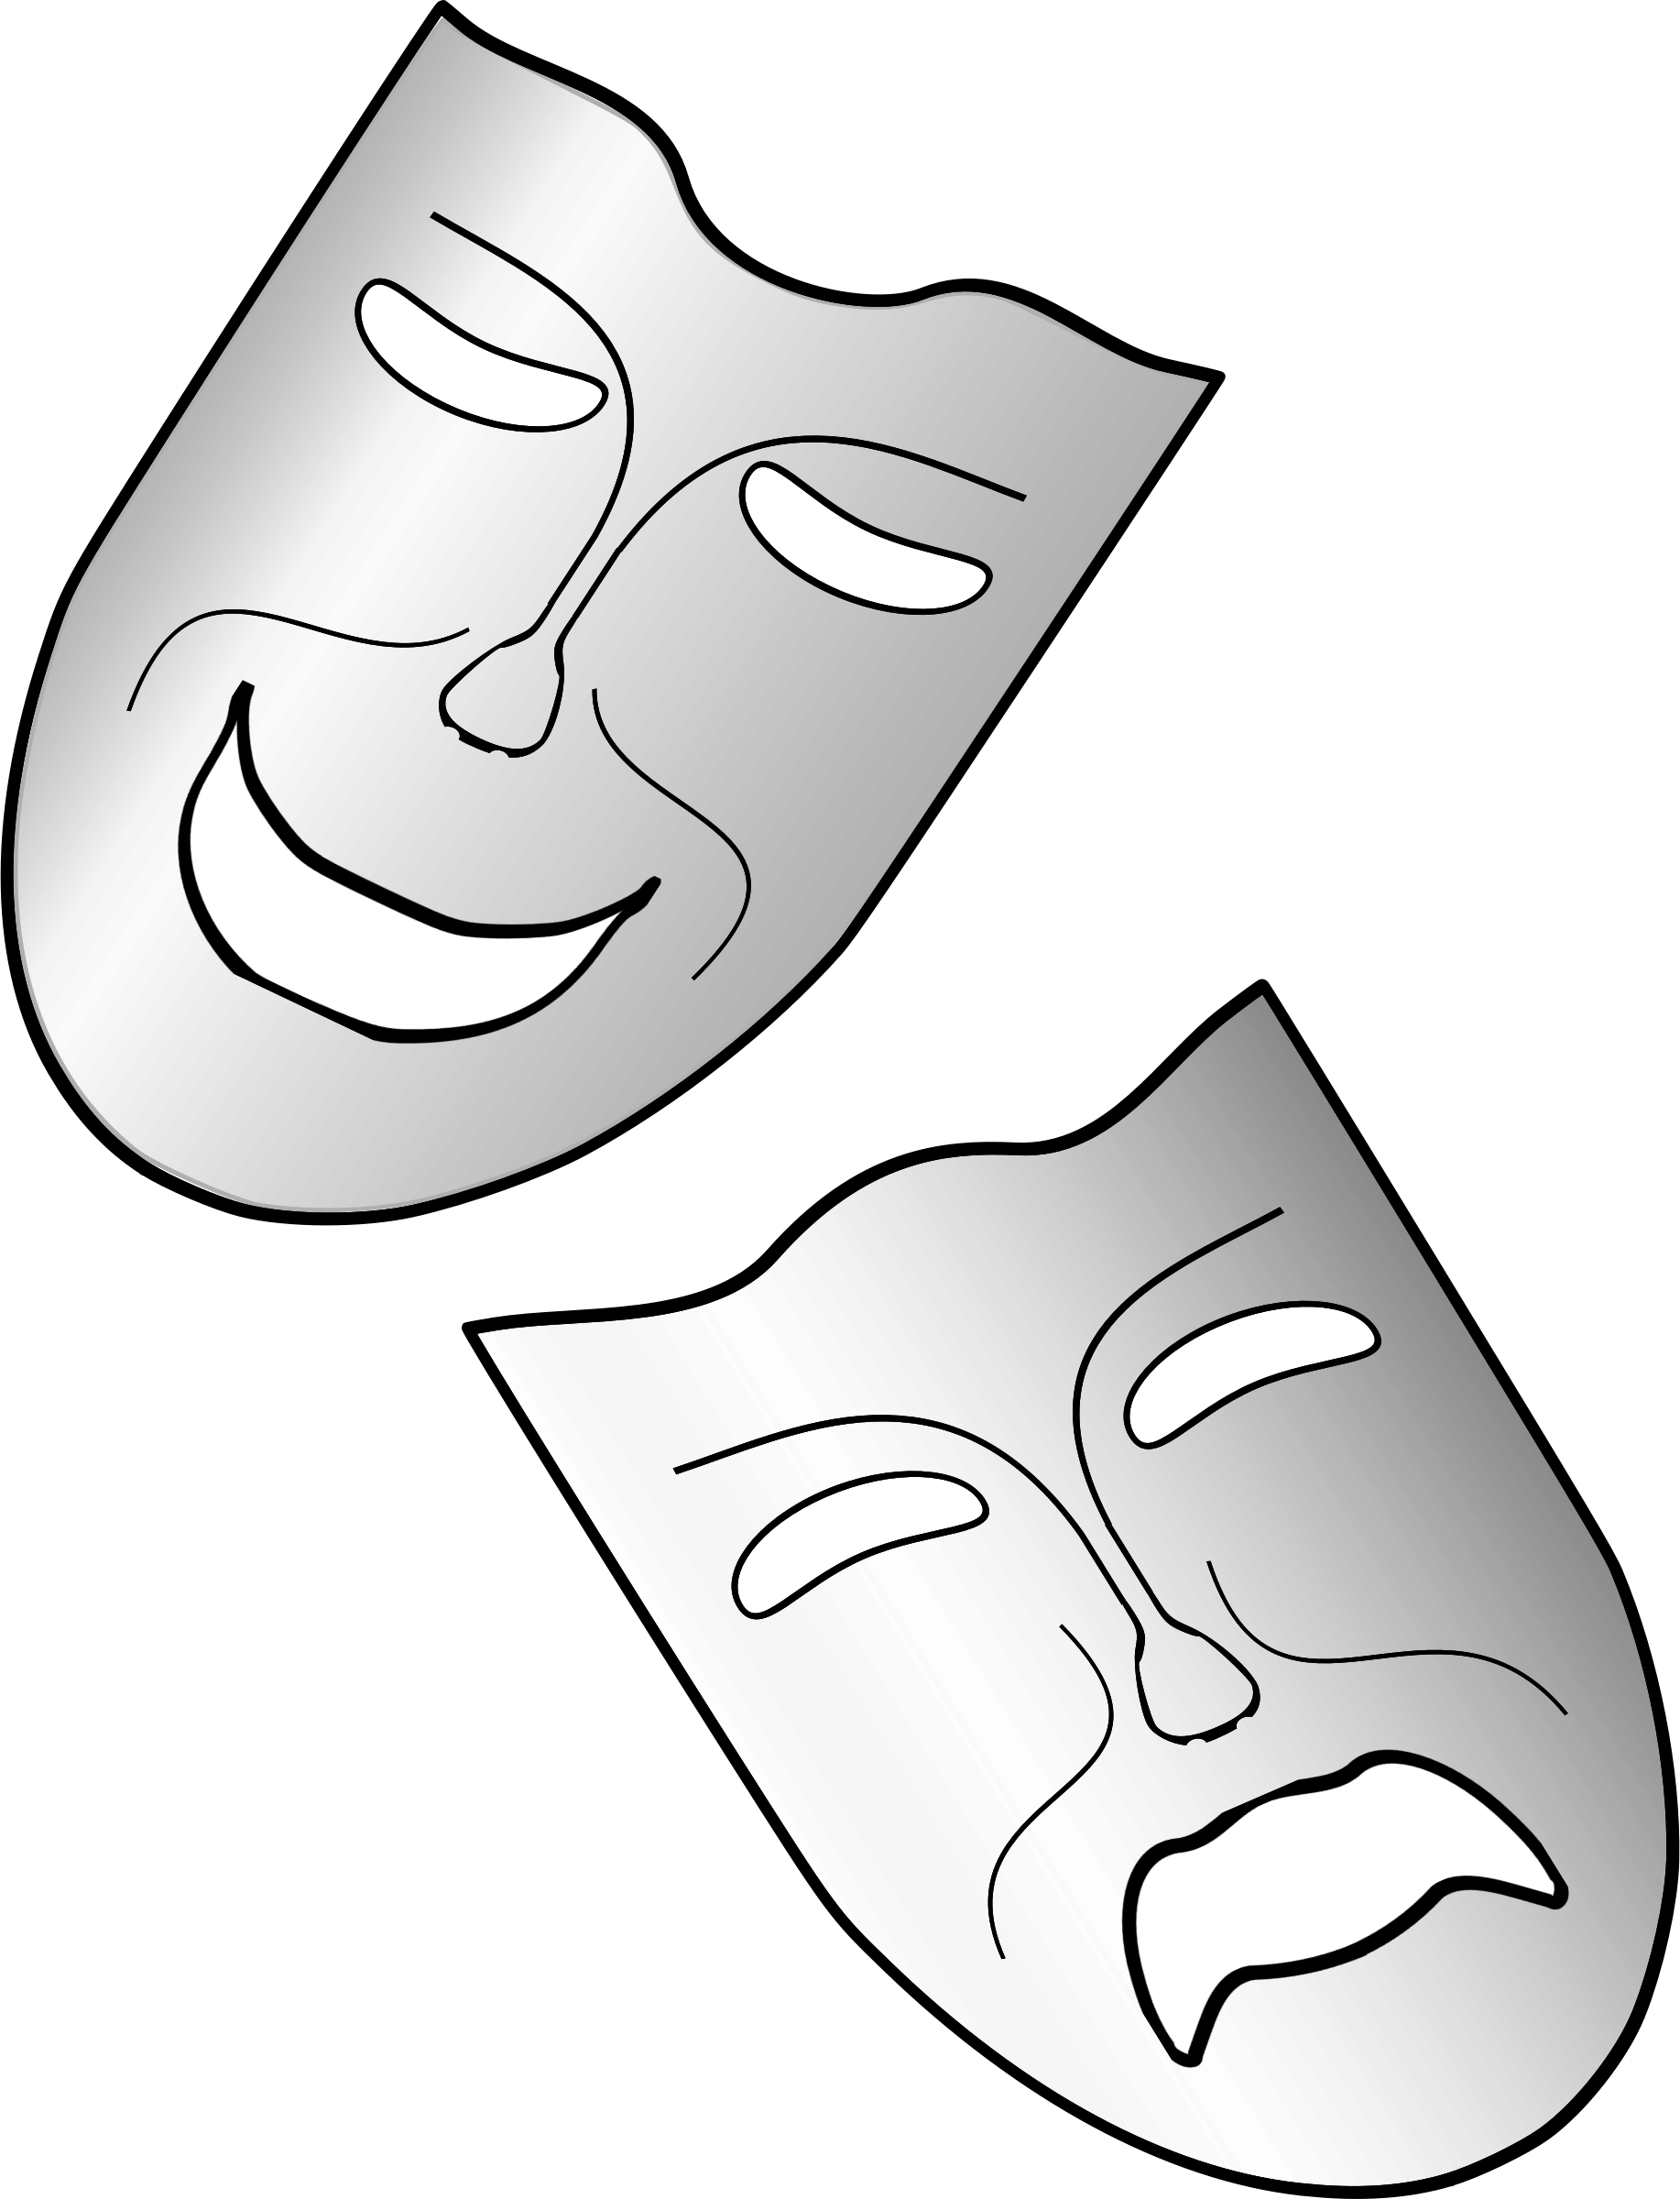 Изо театральные маски. Театральные маски. Театральная маска трафарет. Театральная маска раскраска. Театральные маски раскраски для детей.